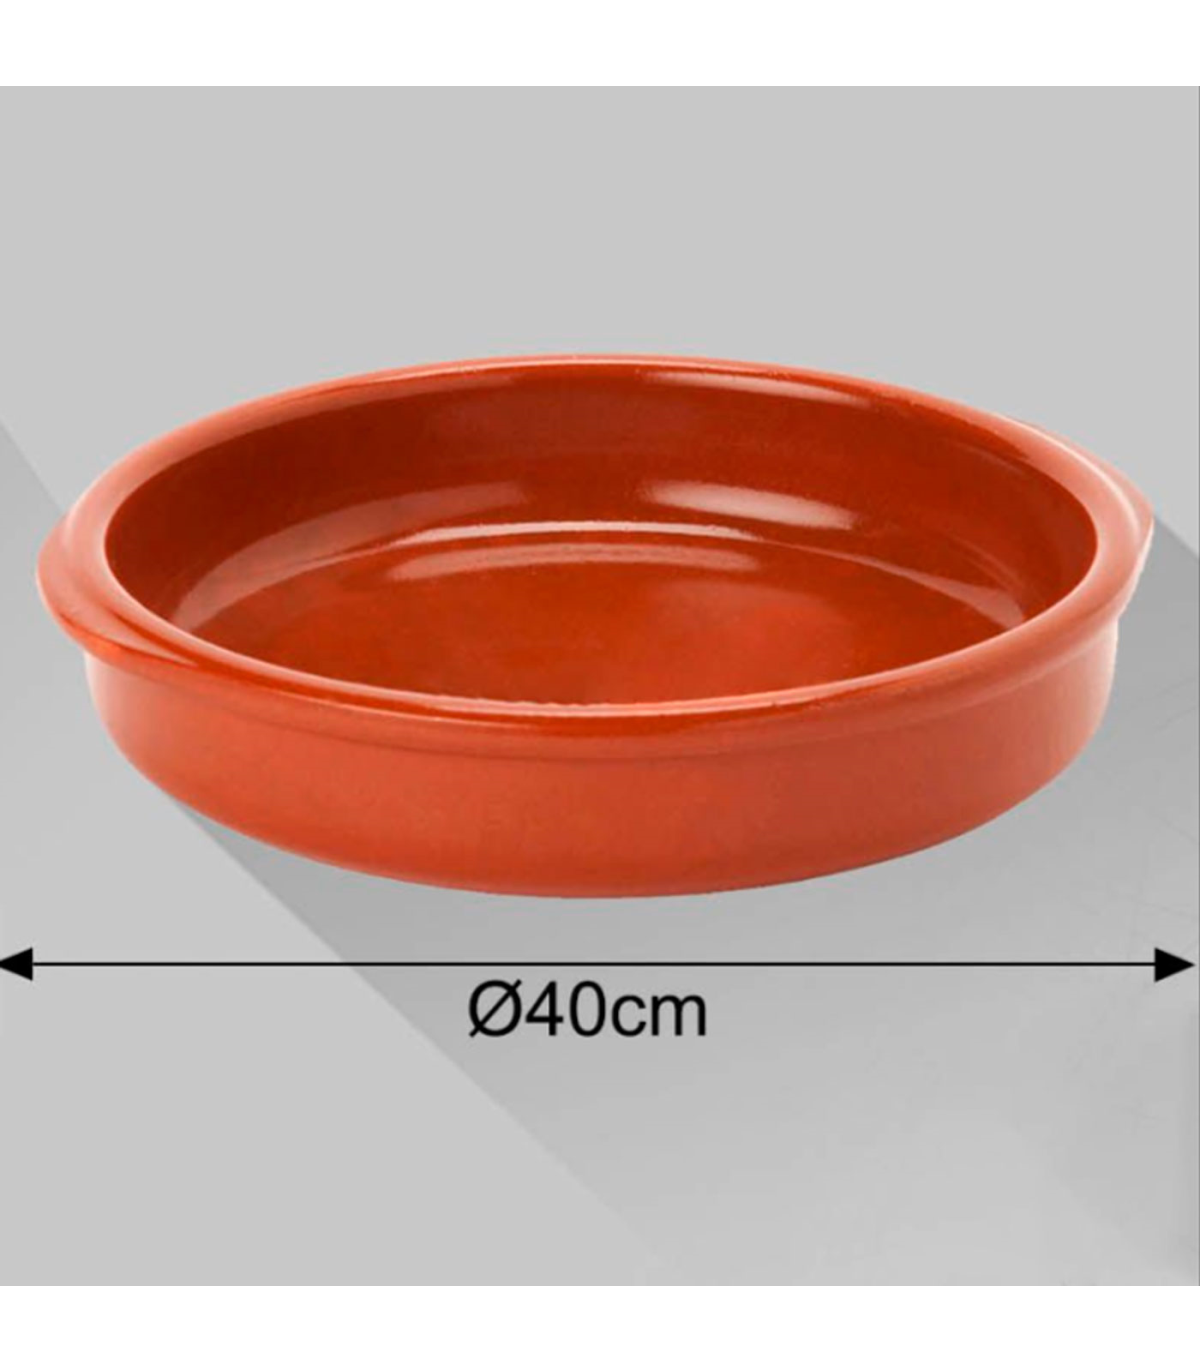 Tradineur - Cazuela redonda de barro - Apta para vitro y horno - Ideal para  guisos y asados caseros – Ø 26 cm